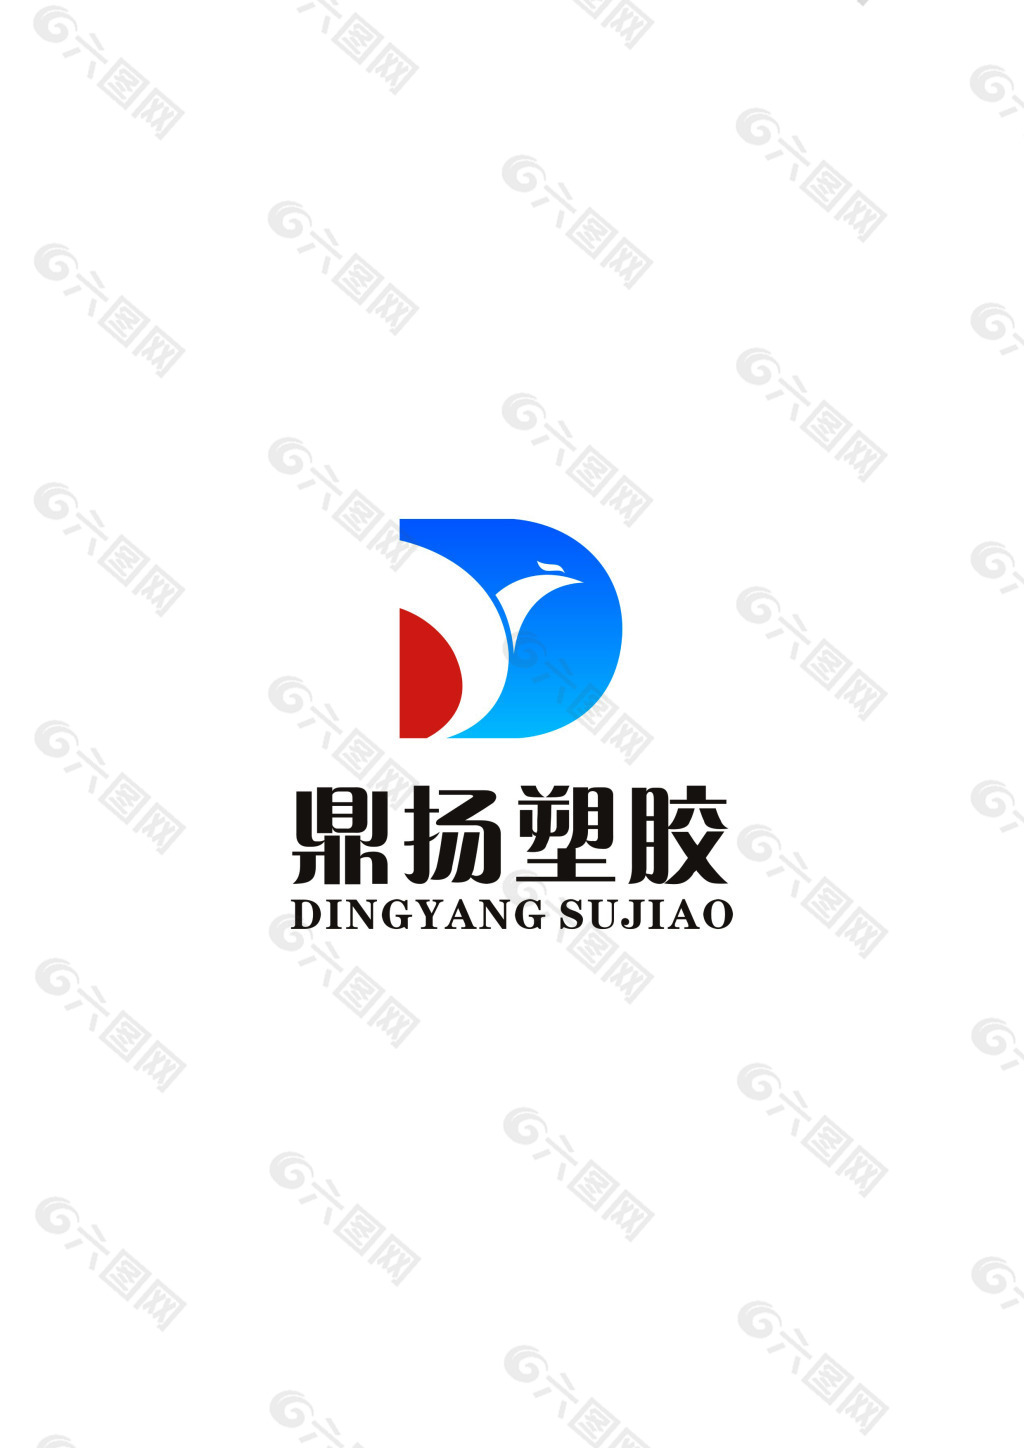 塑胶logo设计商标原创logo